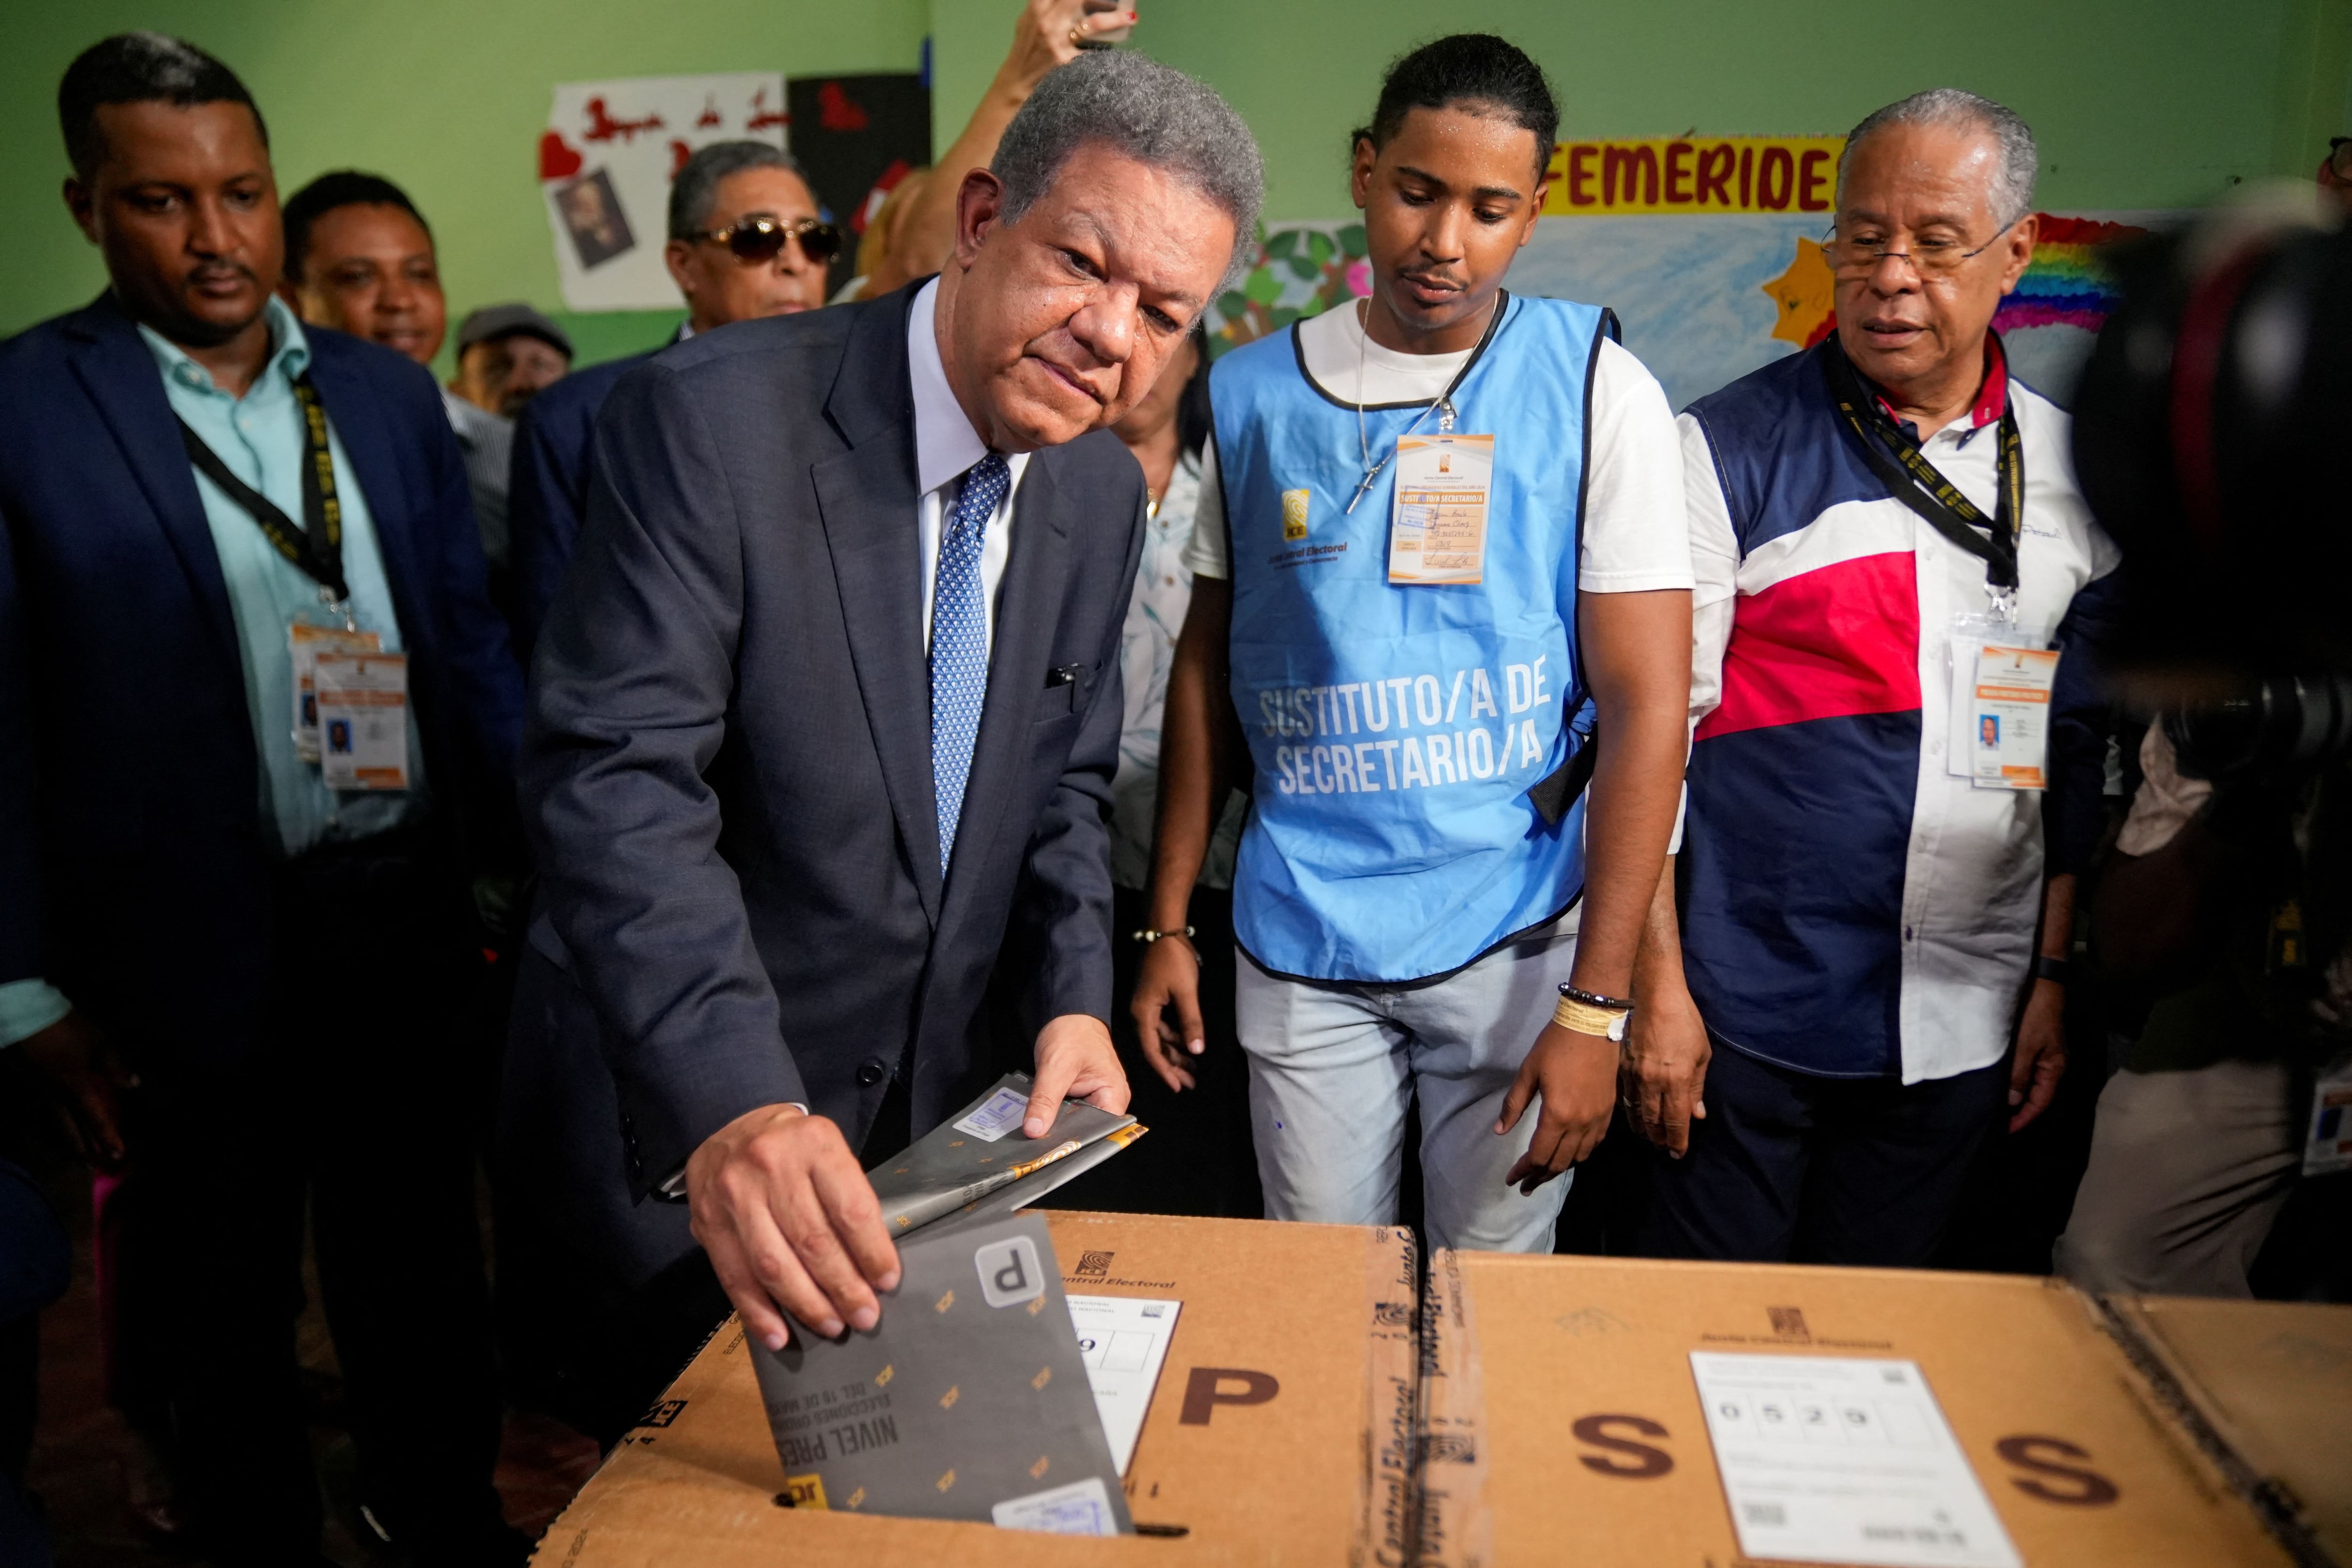 El candidato presidencial del partido Fuerza Popular Leonel Fernández vota el día de las elecciones presidenciales en Santo Domingo, República Dominicana, det 19 de mayo de 2024. REUTERS/Fran Afonso